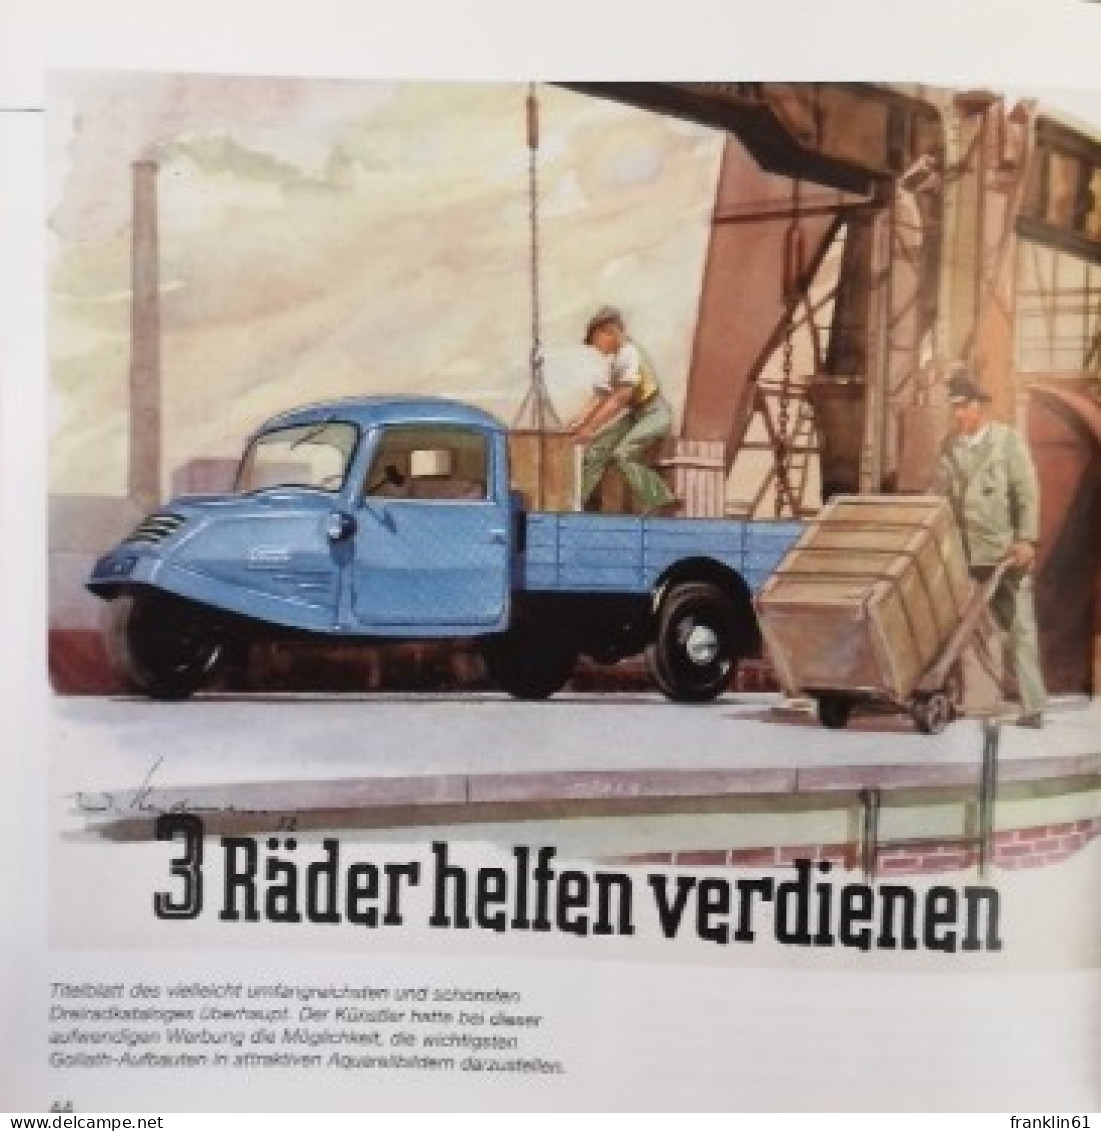 Schrader Motor-Chronik. Dreirad- und Kleinlieferwagen 1945-1967